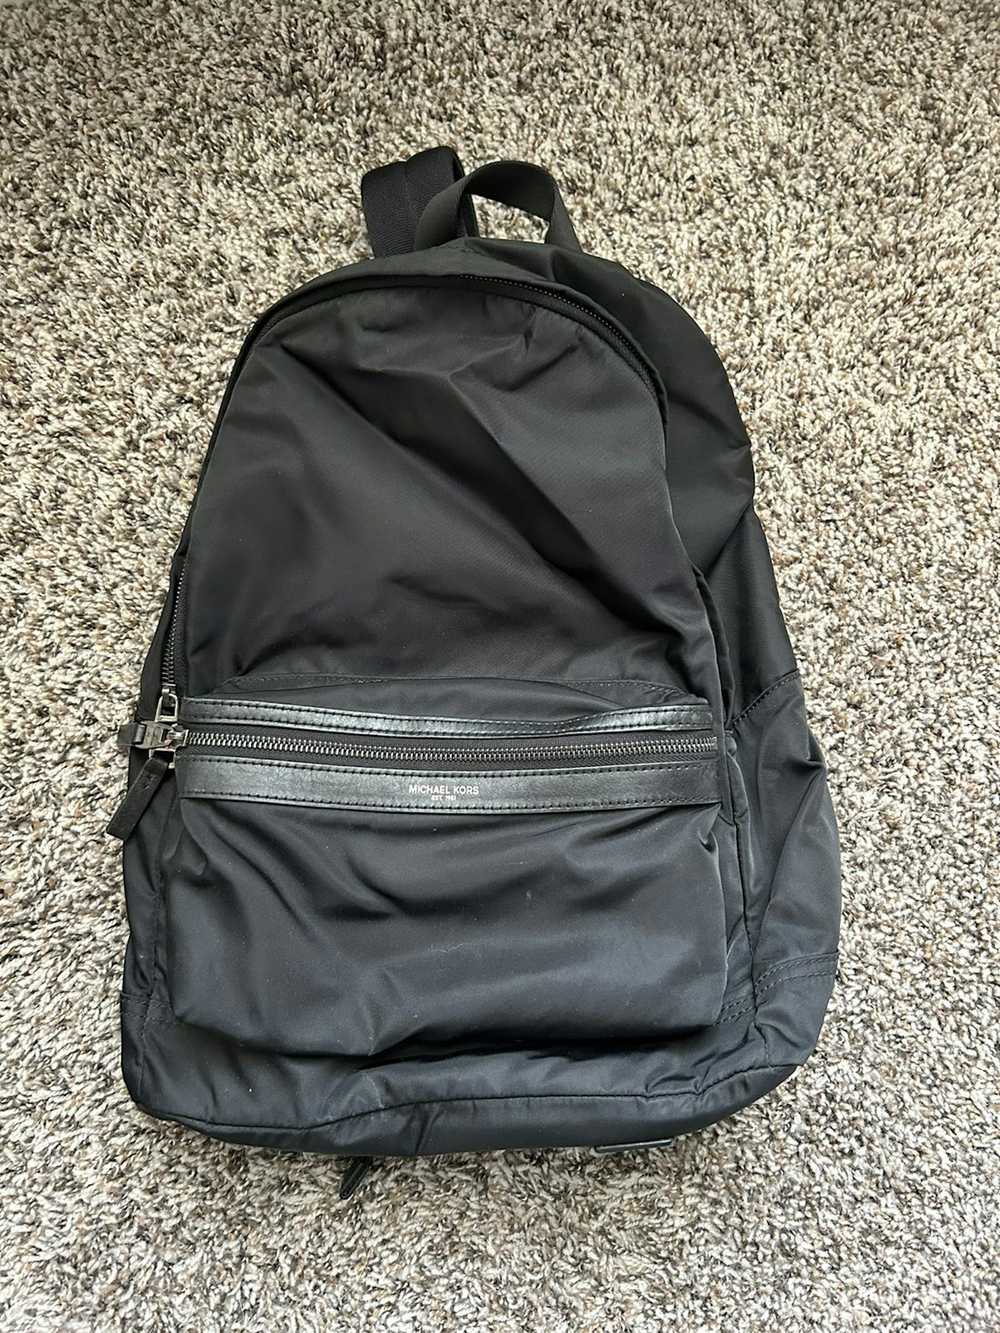 Michael Kors Michael Kors Nylon Backpack (Unisex) - image 1